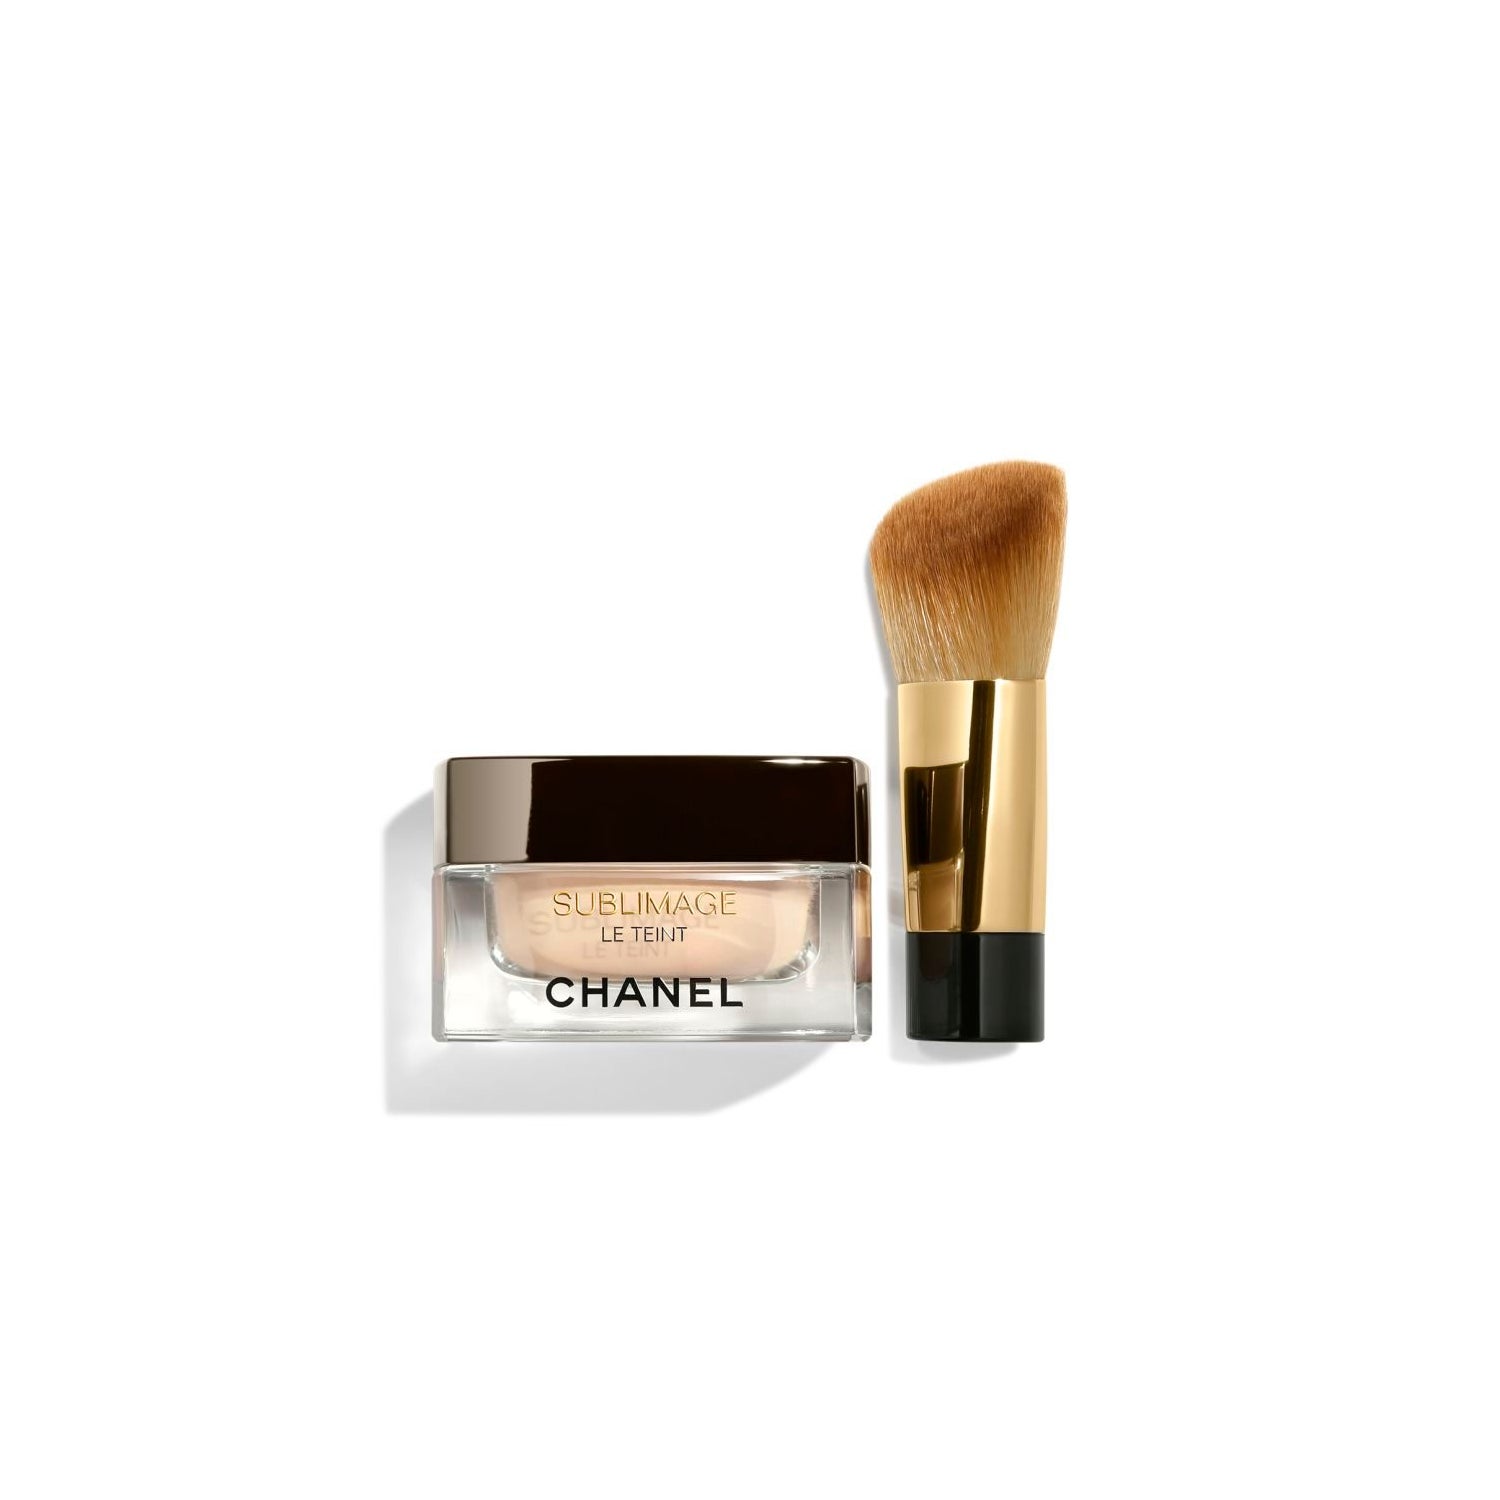 Chanel vs. Cle de Peau